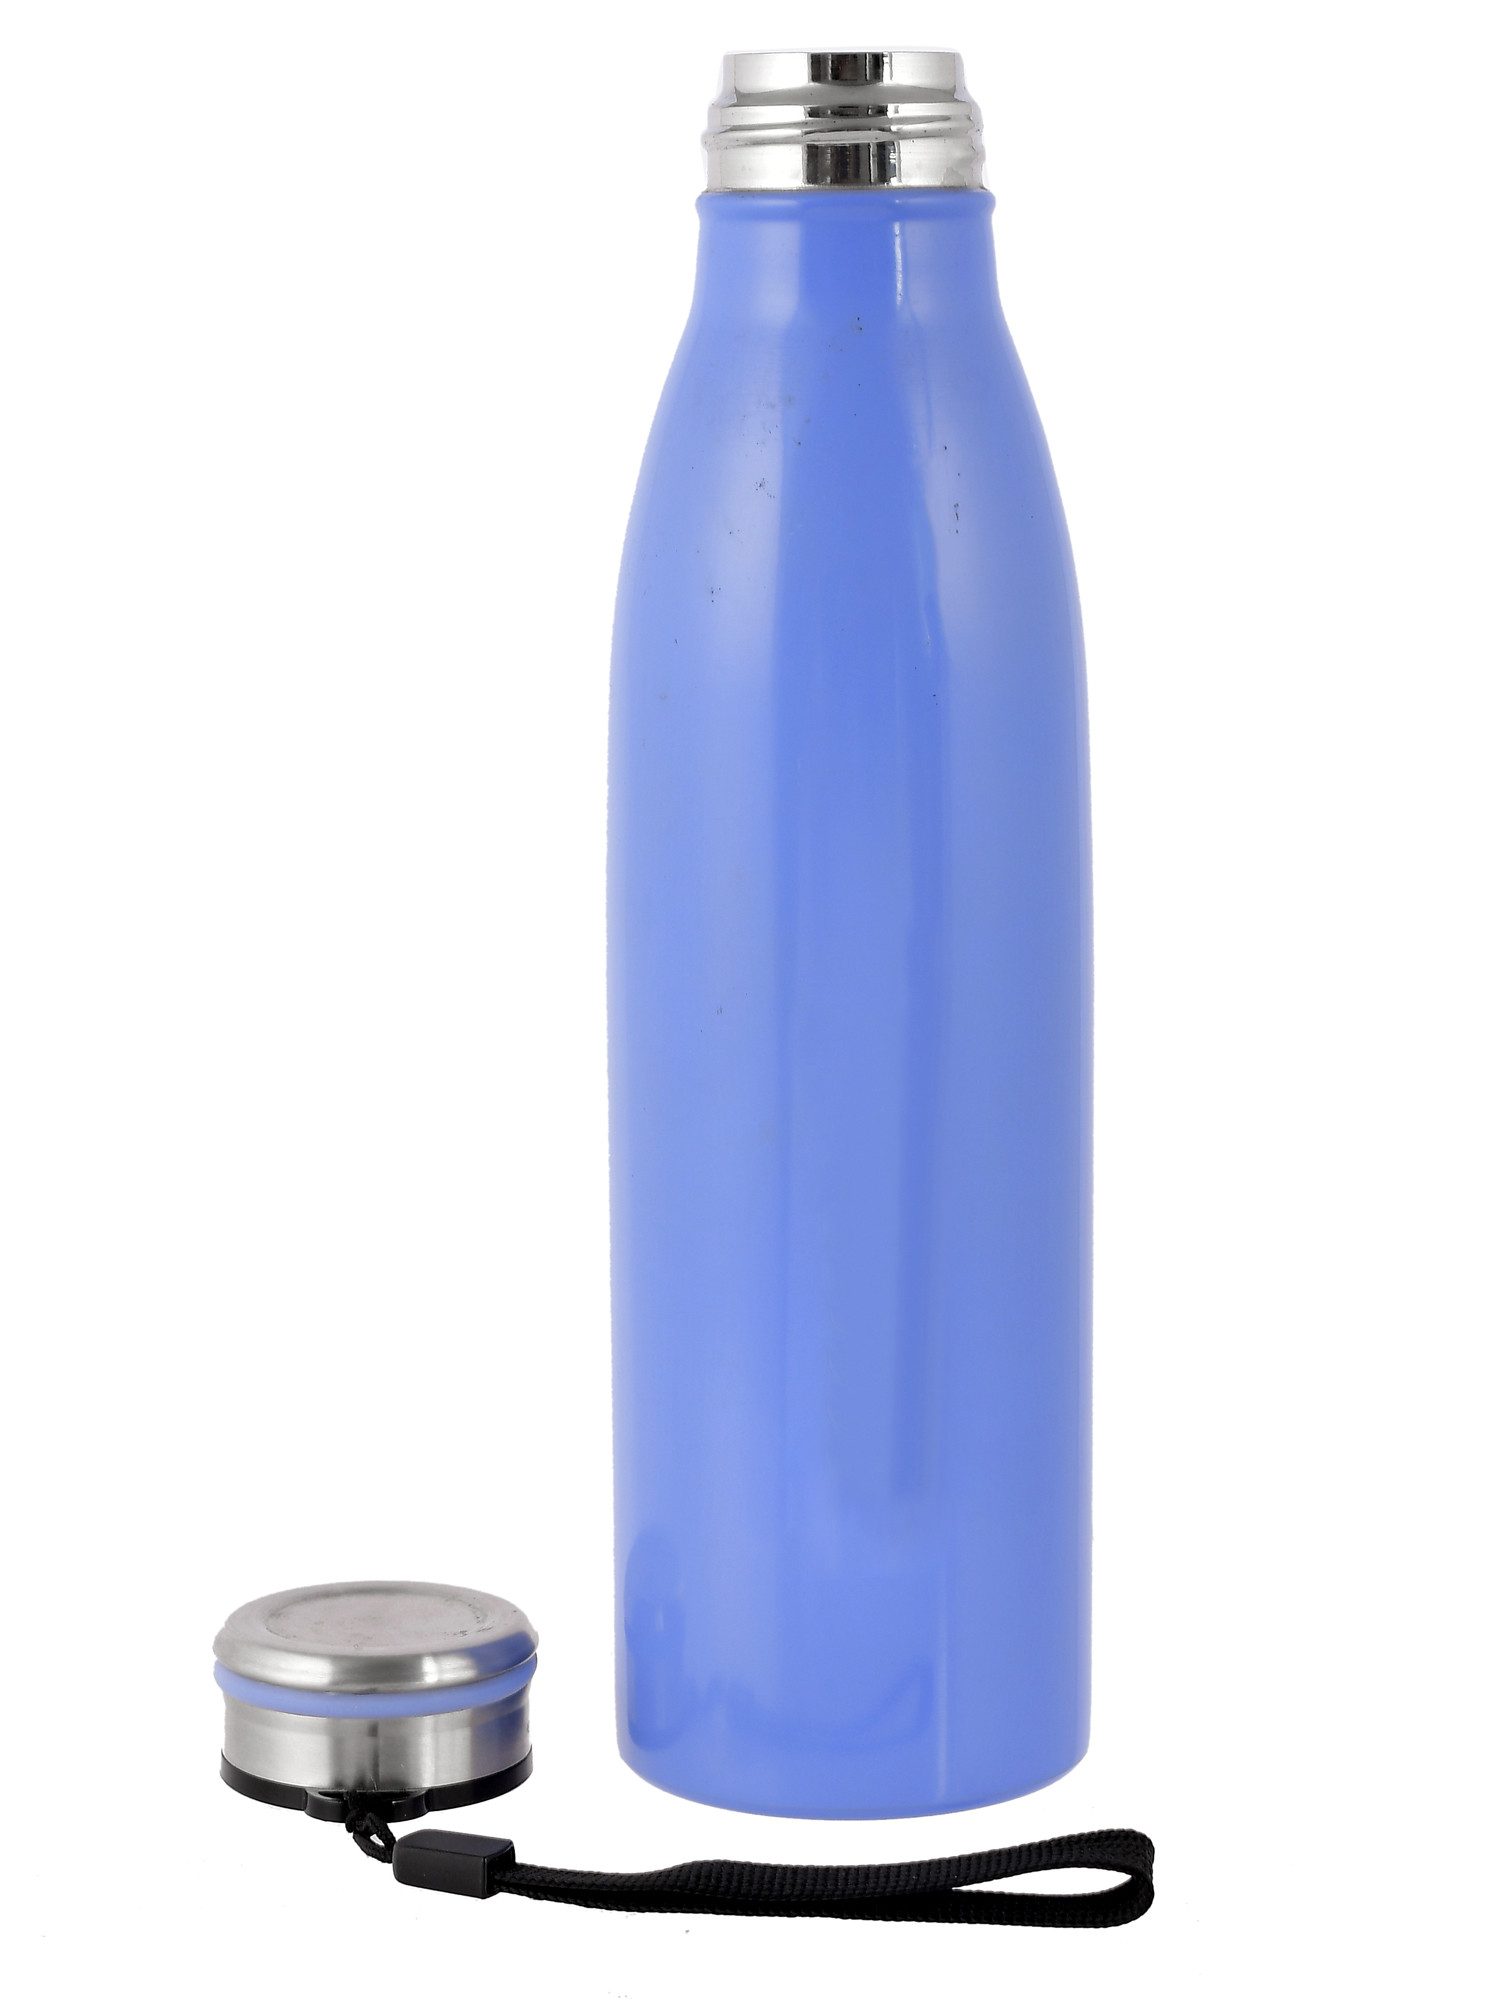 Kuber Industries Stainless Steel Fridge Water Bottle, 750 ML (Blue)-HS42KUBMART25189